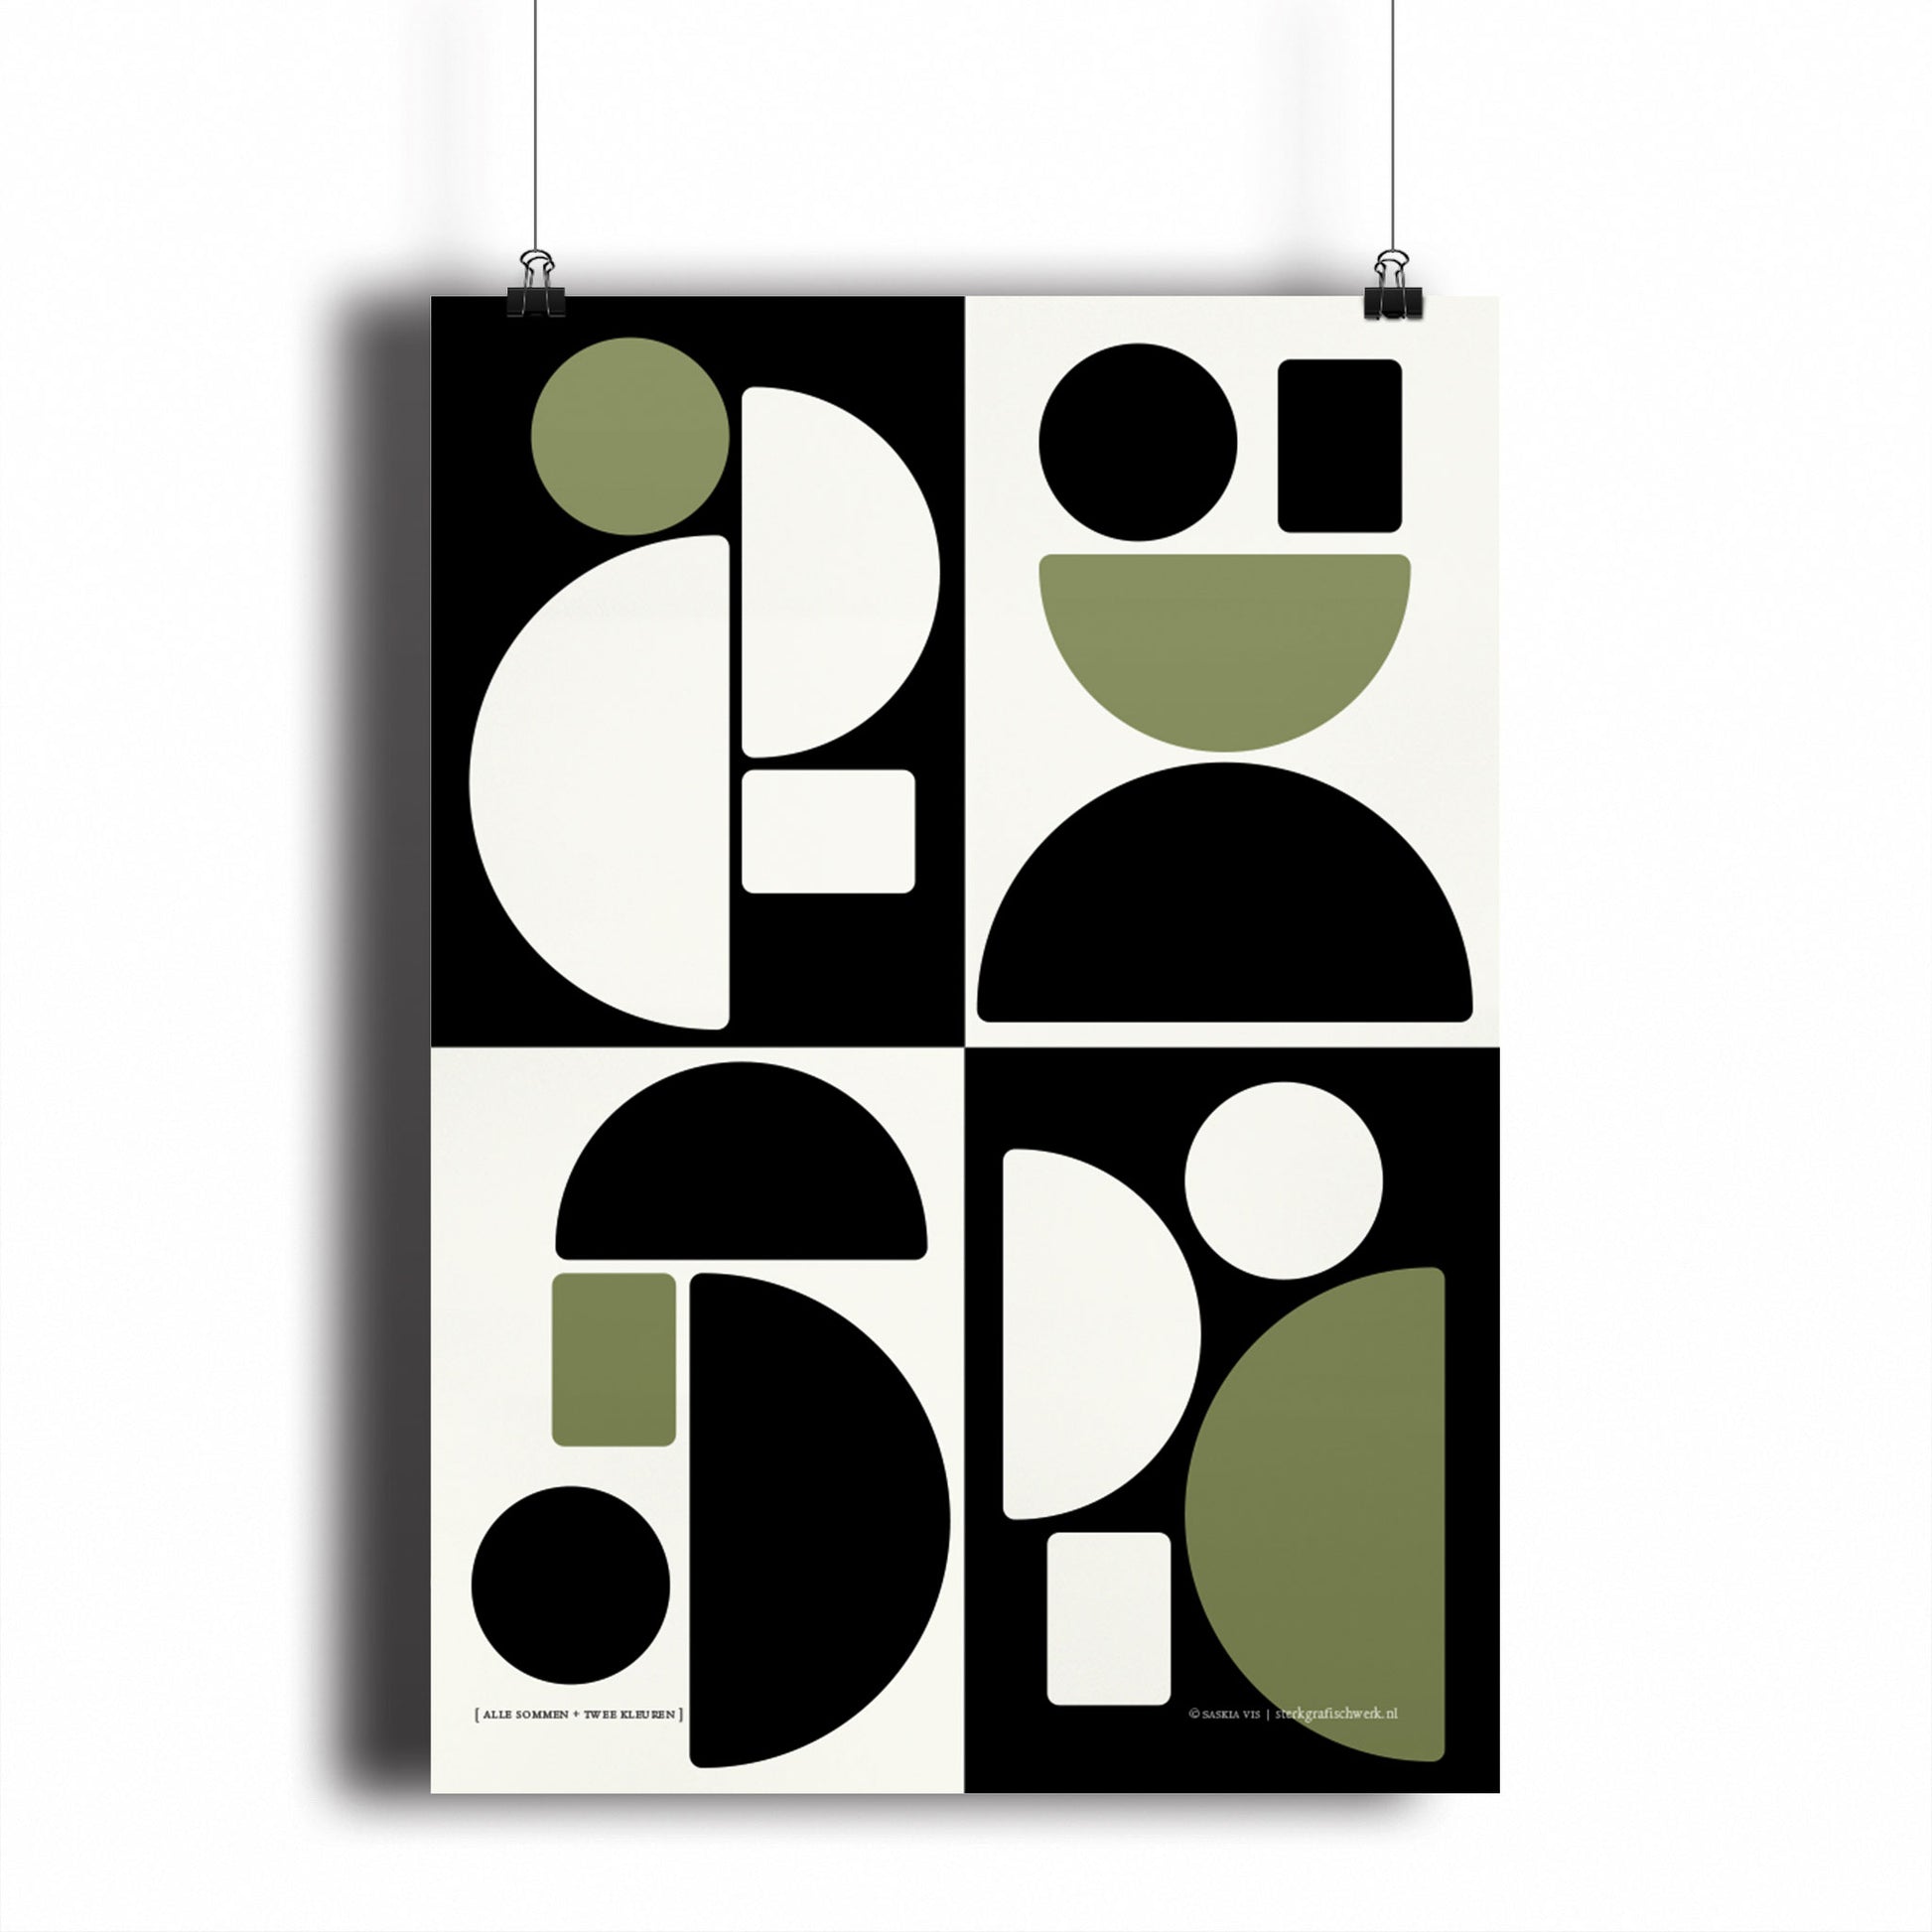 Productafbeelding, poster "alle sommen + twee kleuren", hangend aan een witte wand, een overzichtsfoto 